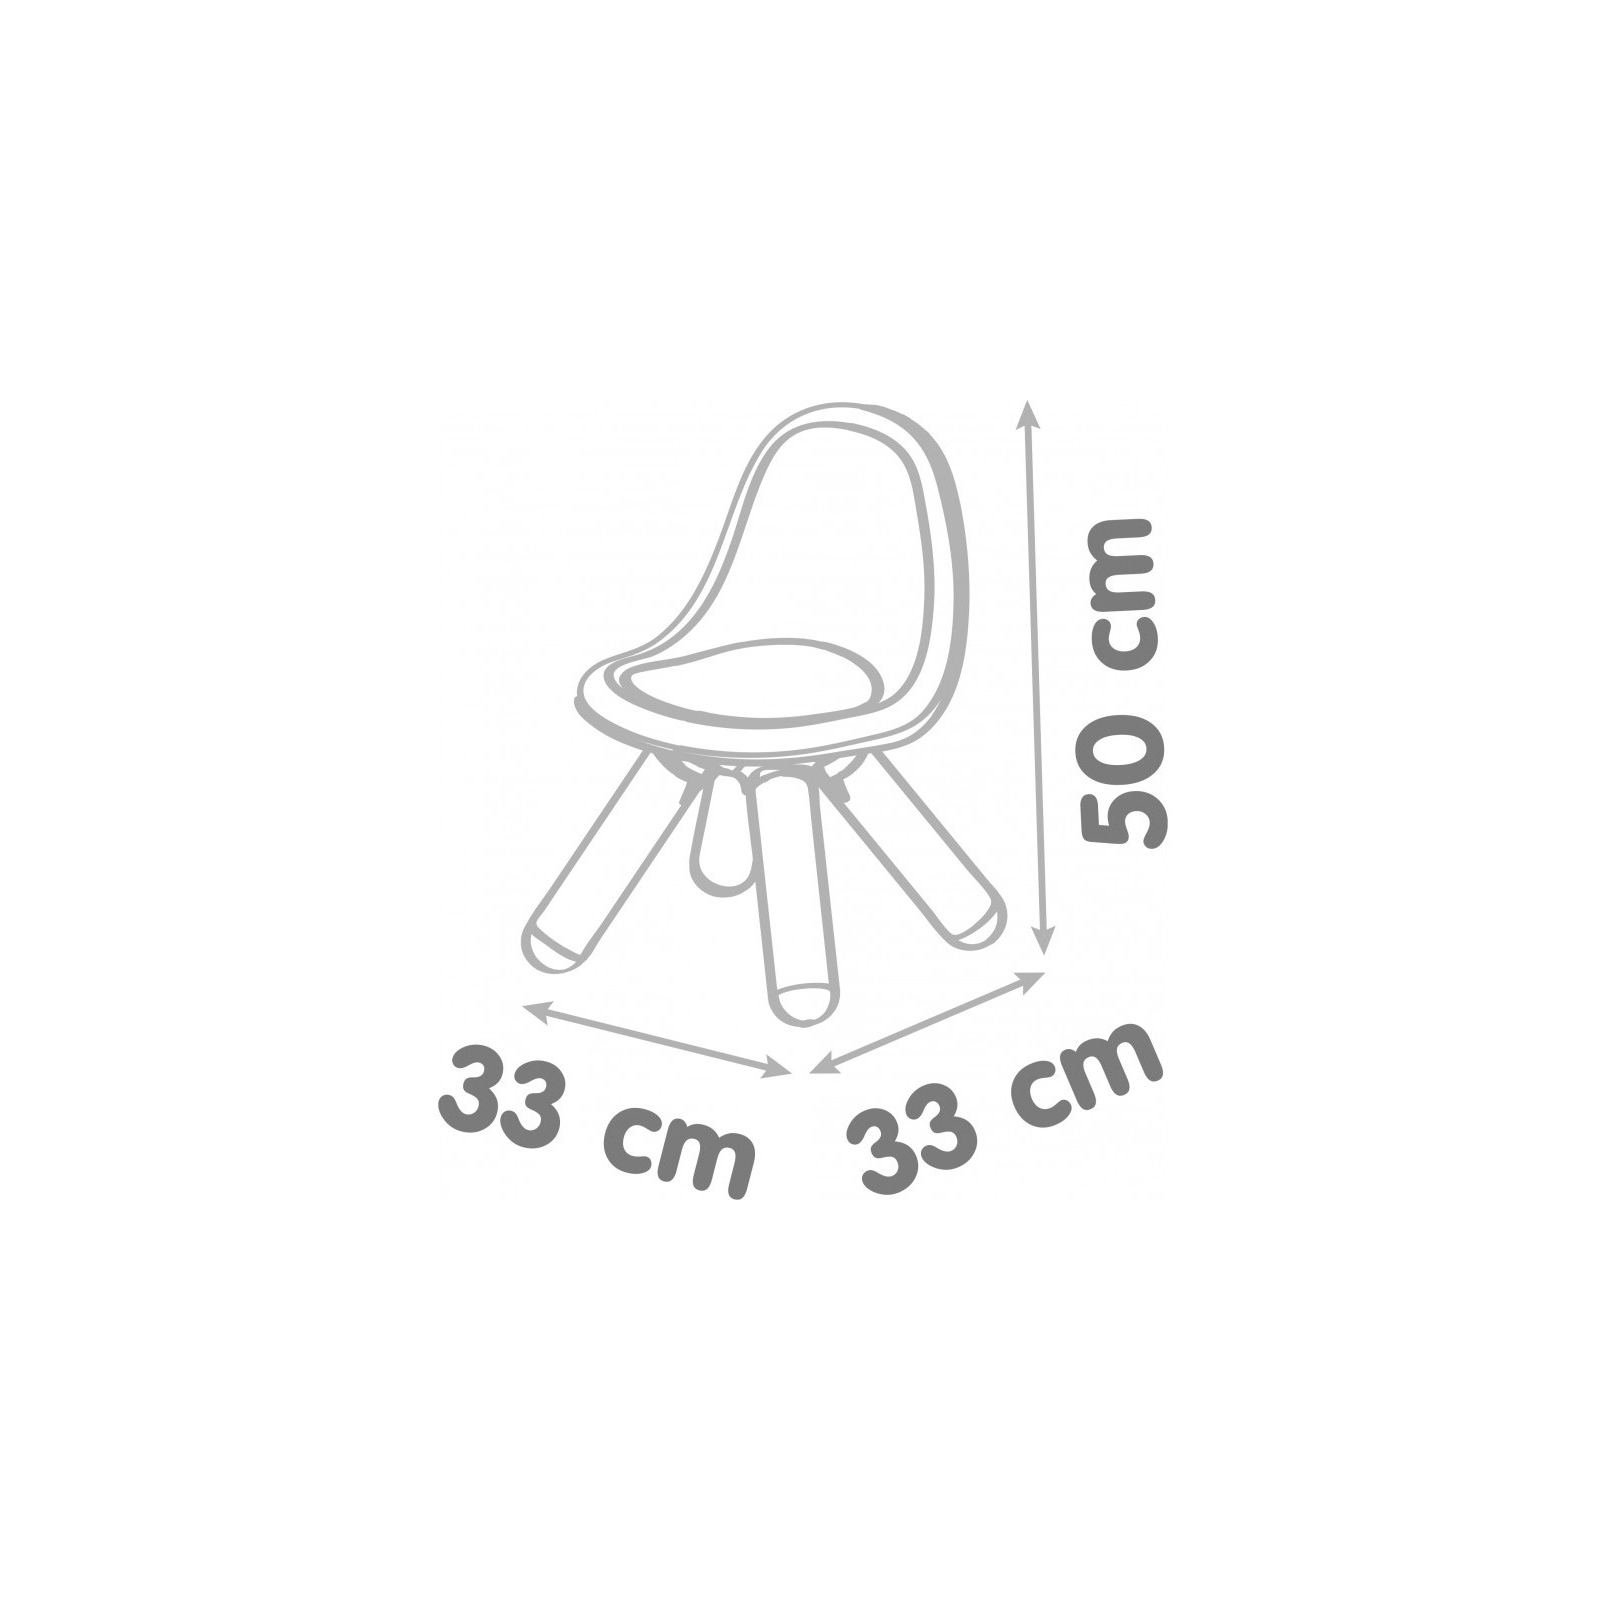 Детский стульчик Smoby со спинкой Серо-бежевый (880113) изображение 3